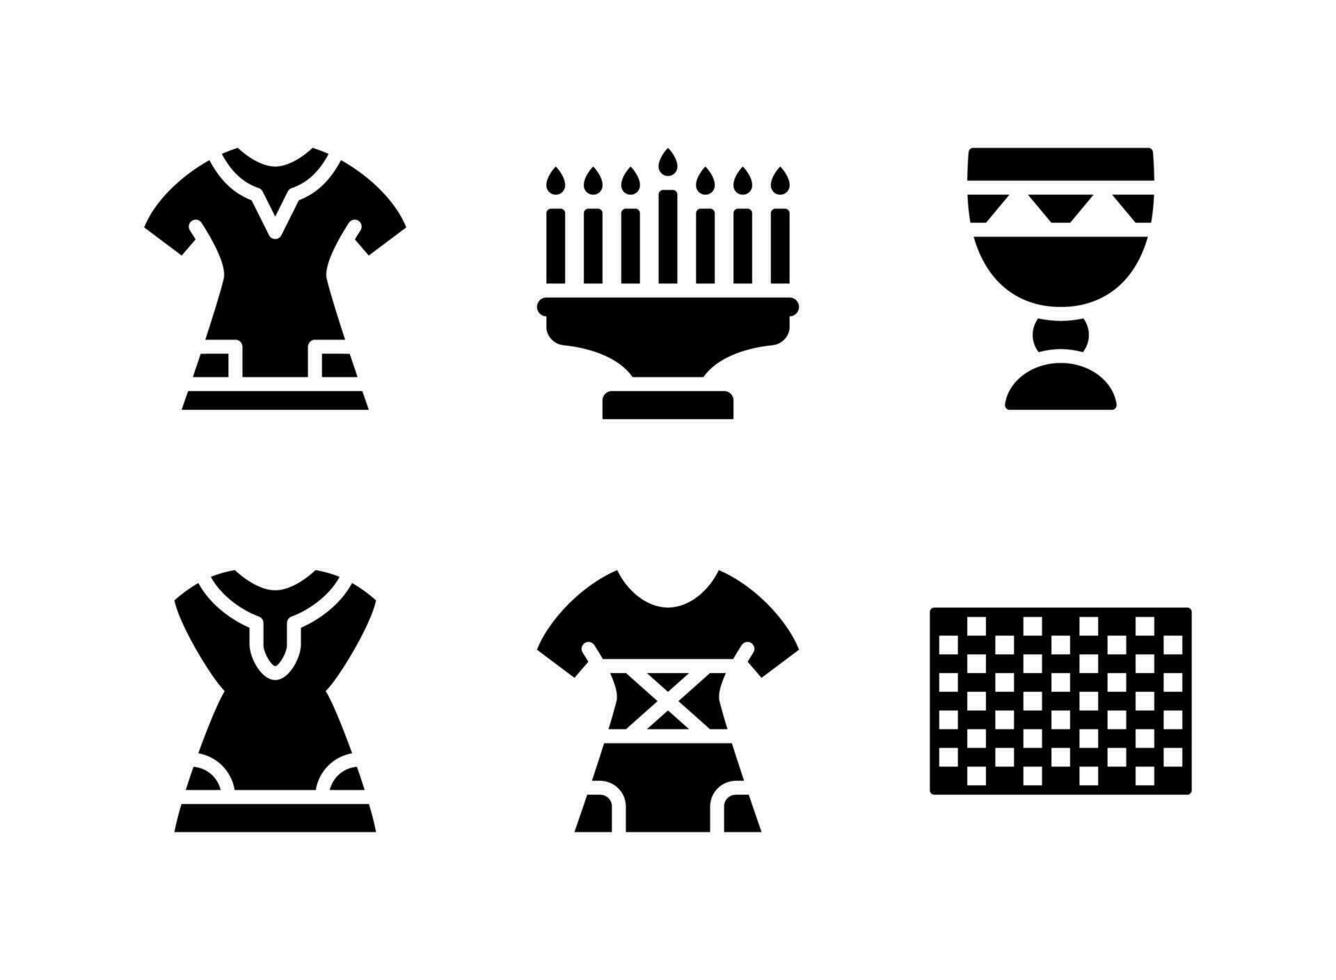 semplice set di icone solide vettoriali relative a kwanzaa. contiene icone come vestito, lampadario, tazza e altro.